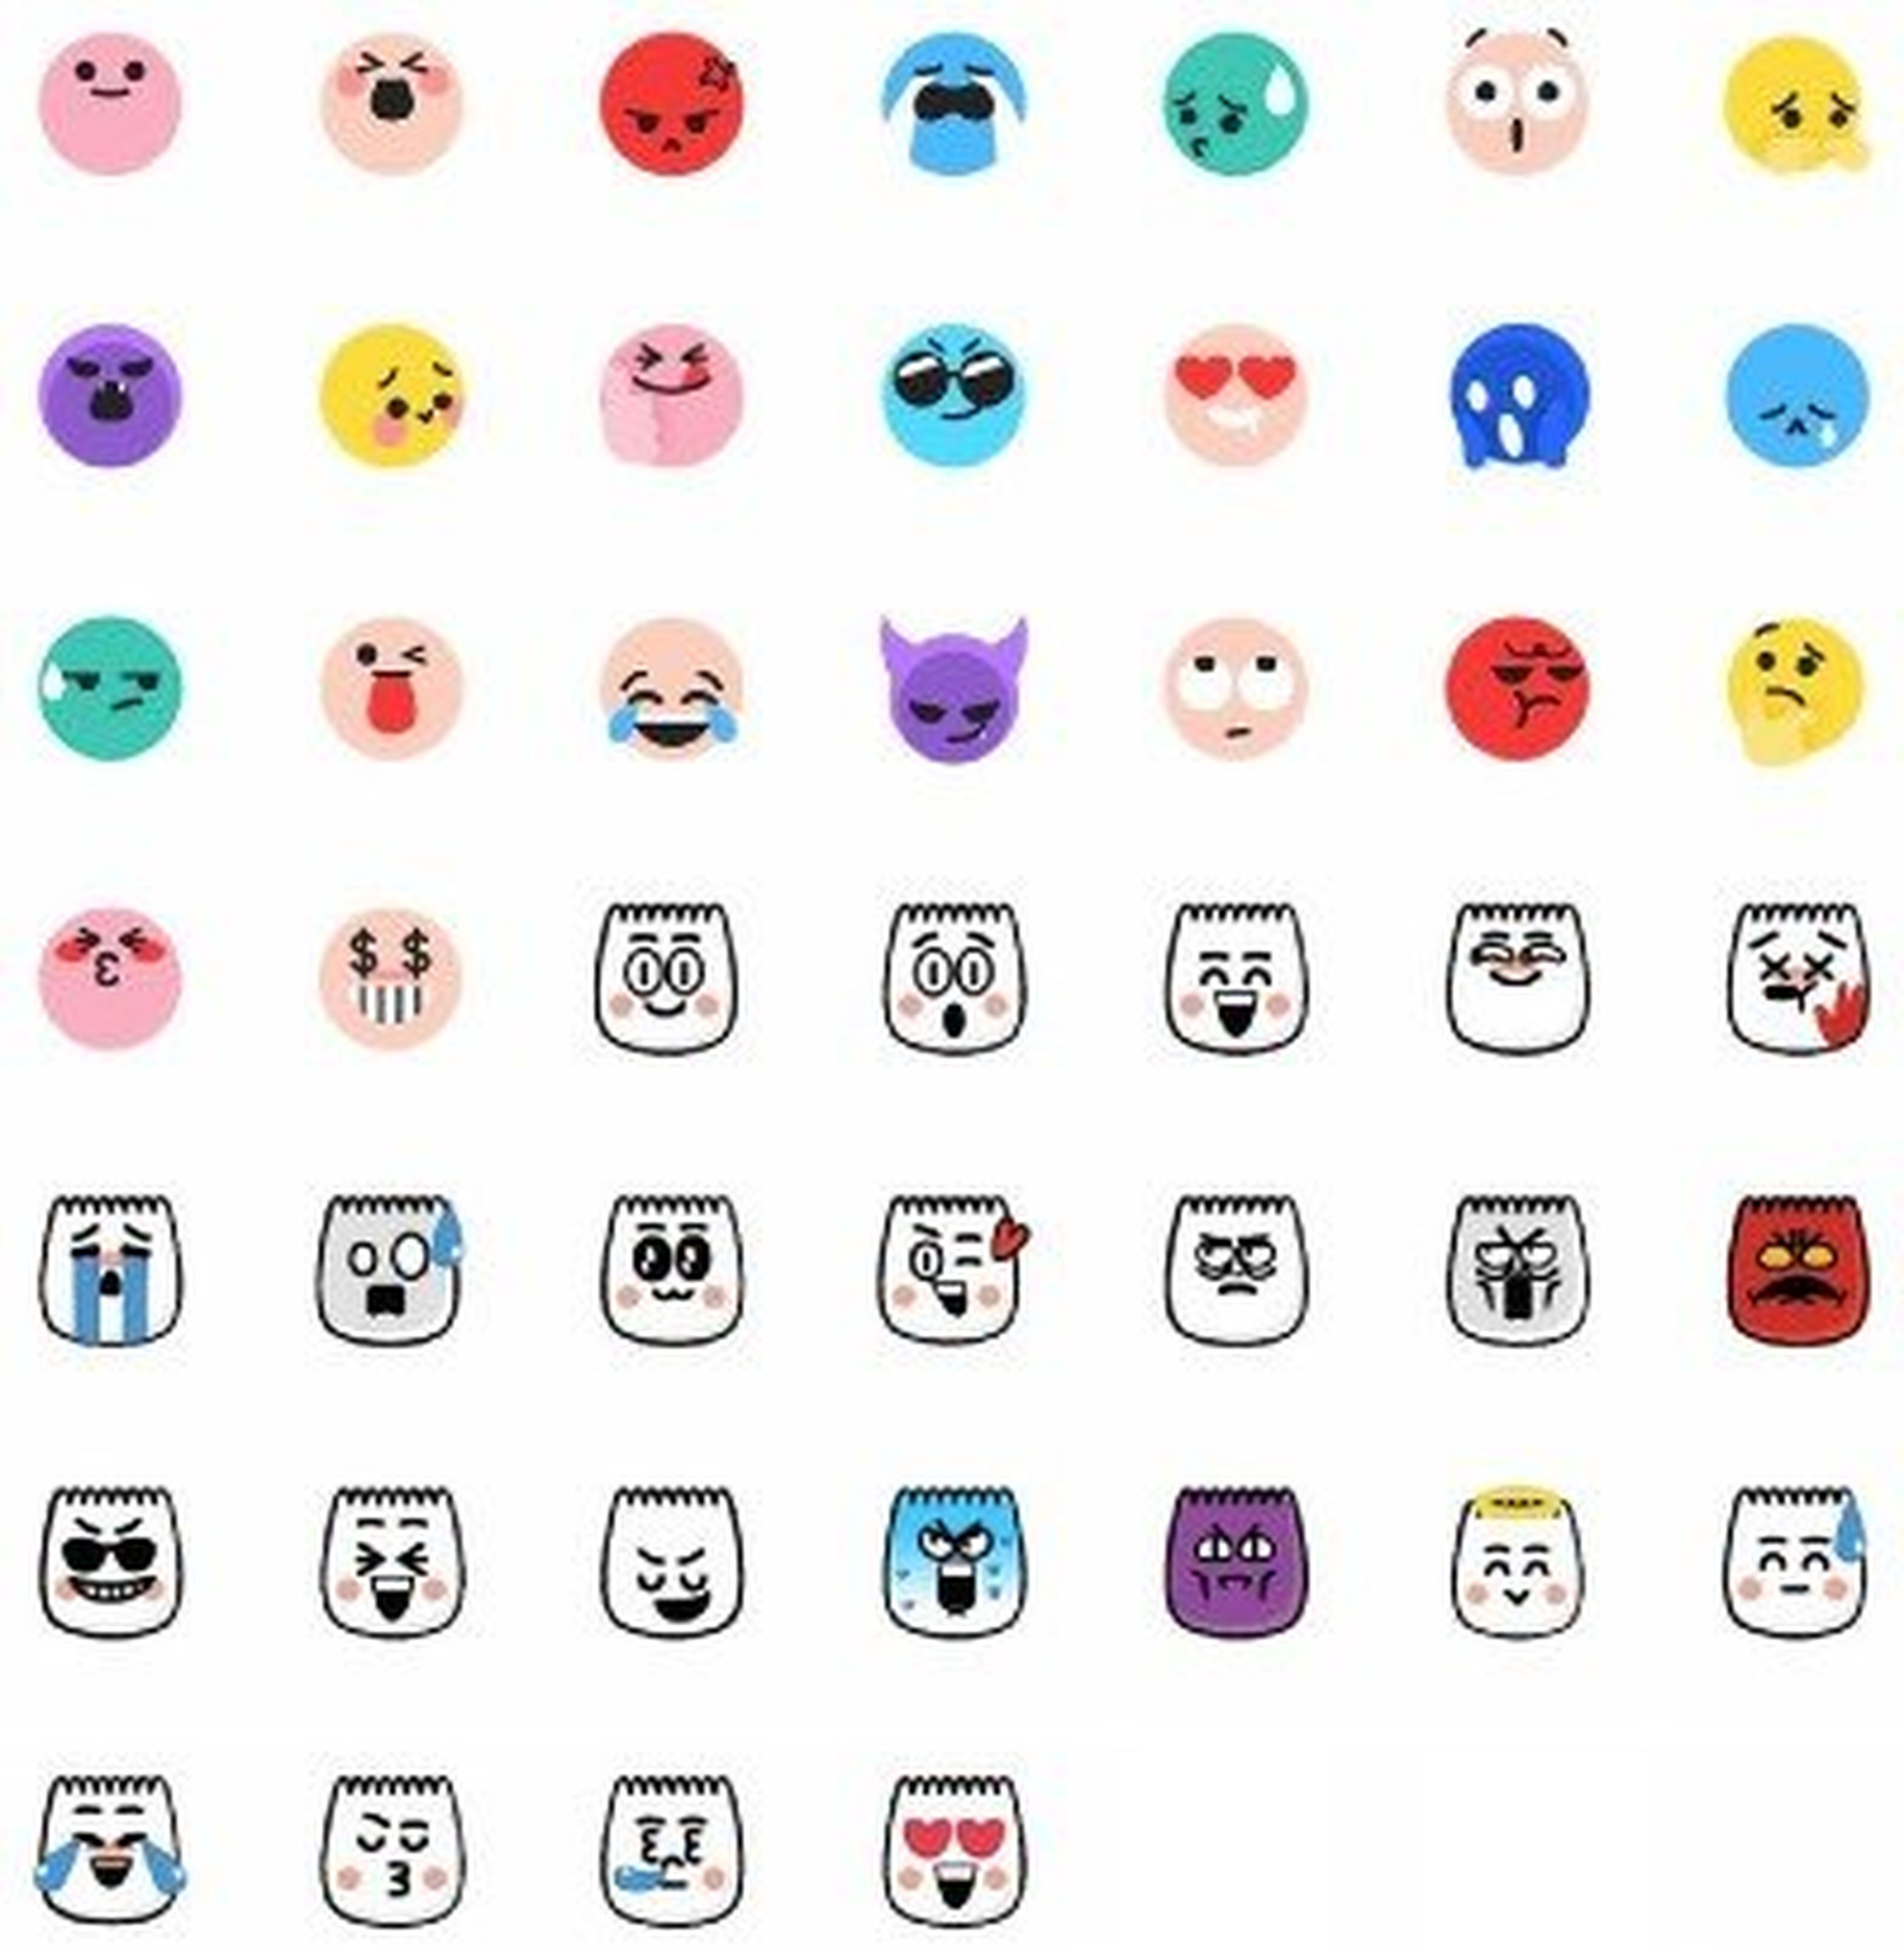 En total, existen 46 emoticonos secretos en TikTok.